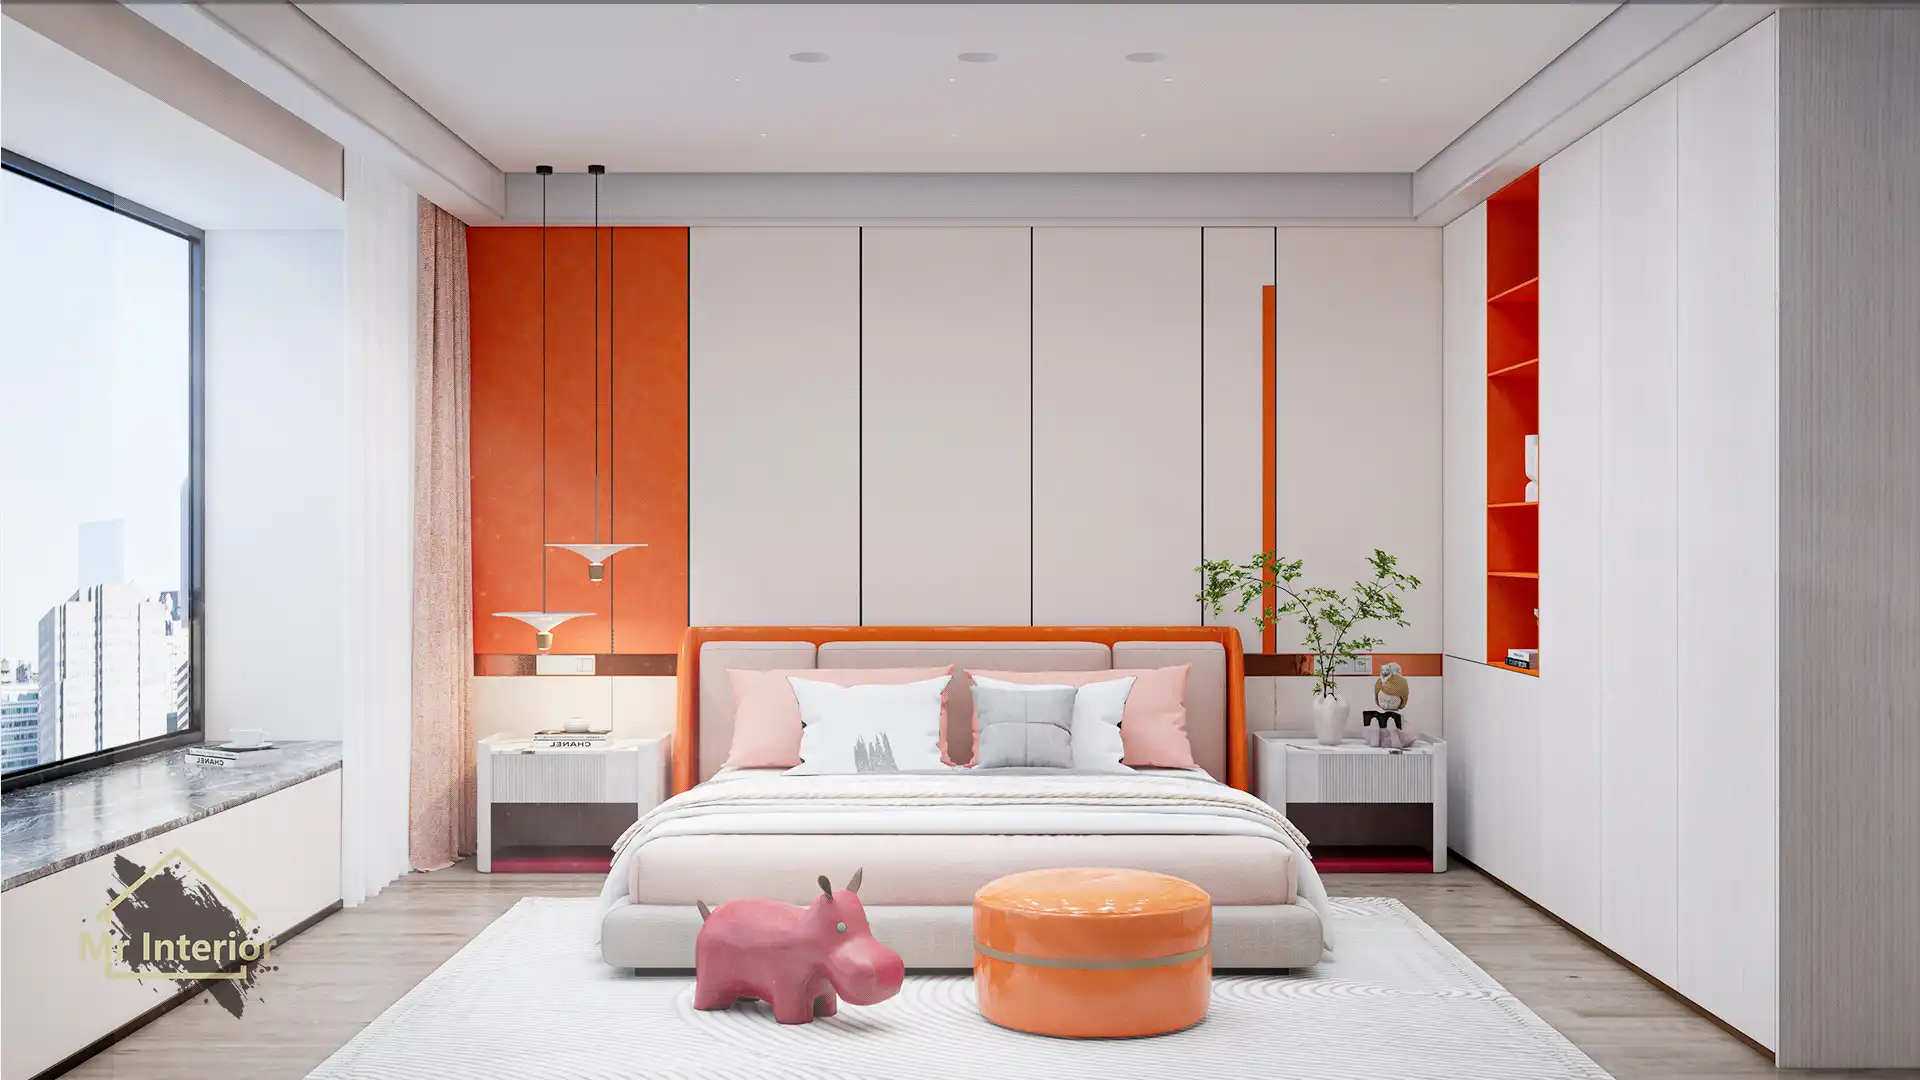 這是白羊座的睡房。設計風格探用了現代風；色調明亮，米色主調，橙色點綴；圖片中句含了橙色軟墊雙人床，白色掩門大衣櫃，橙色開方式書架，白色及橙色特色牆身，紅色懶人梳化，白羊座裝飾及自然光等。Mr Interior室內設計裝修及傢俬風格。